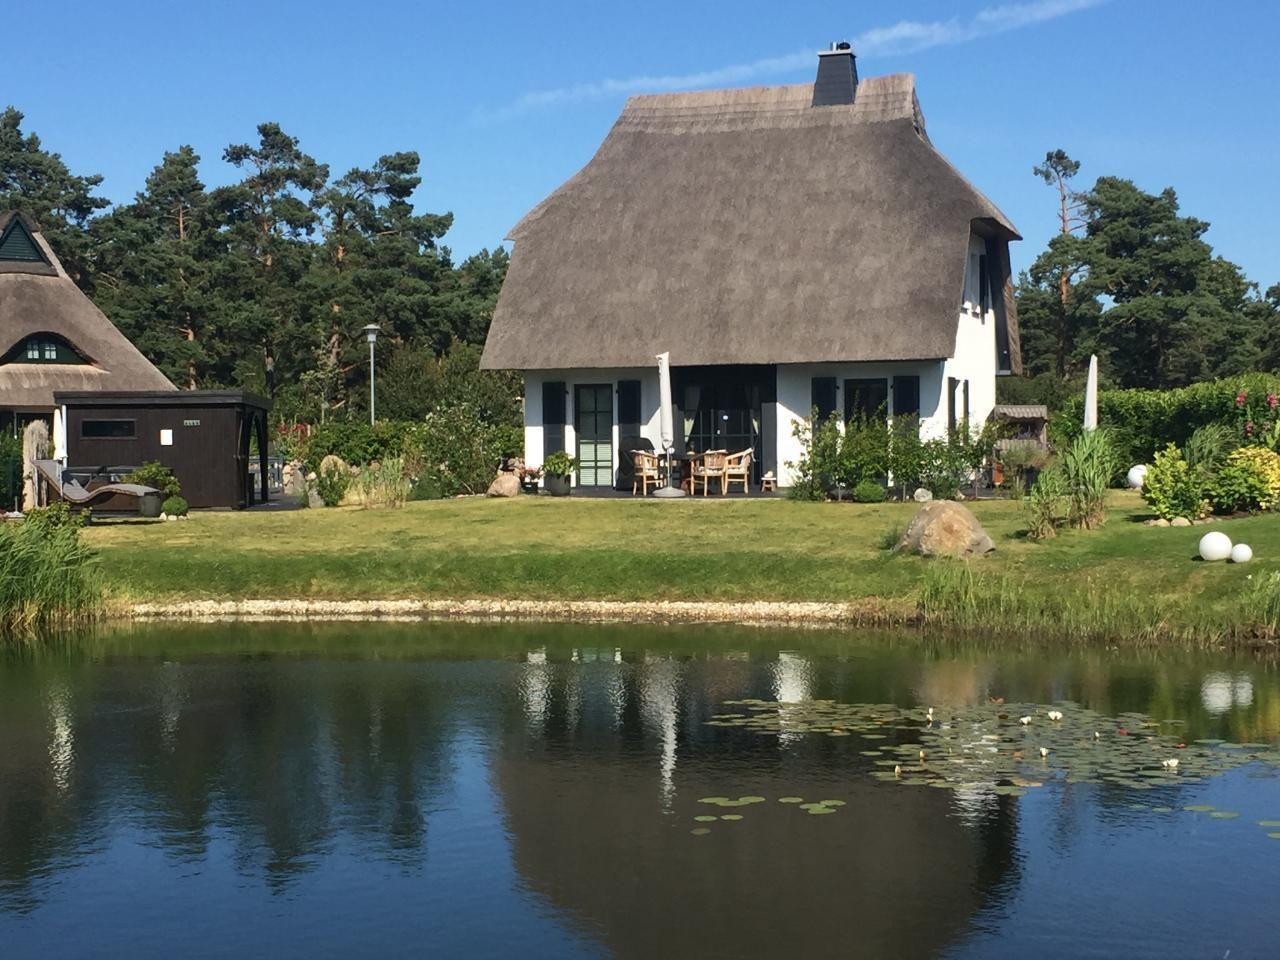 5 Sterne Reetdachhaus in Sonnenlage am Wasser mit   in Deutschland